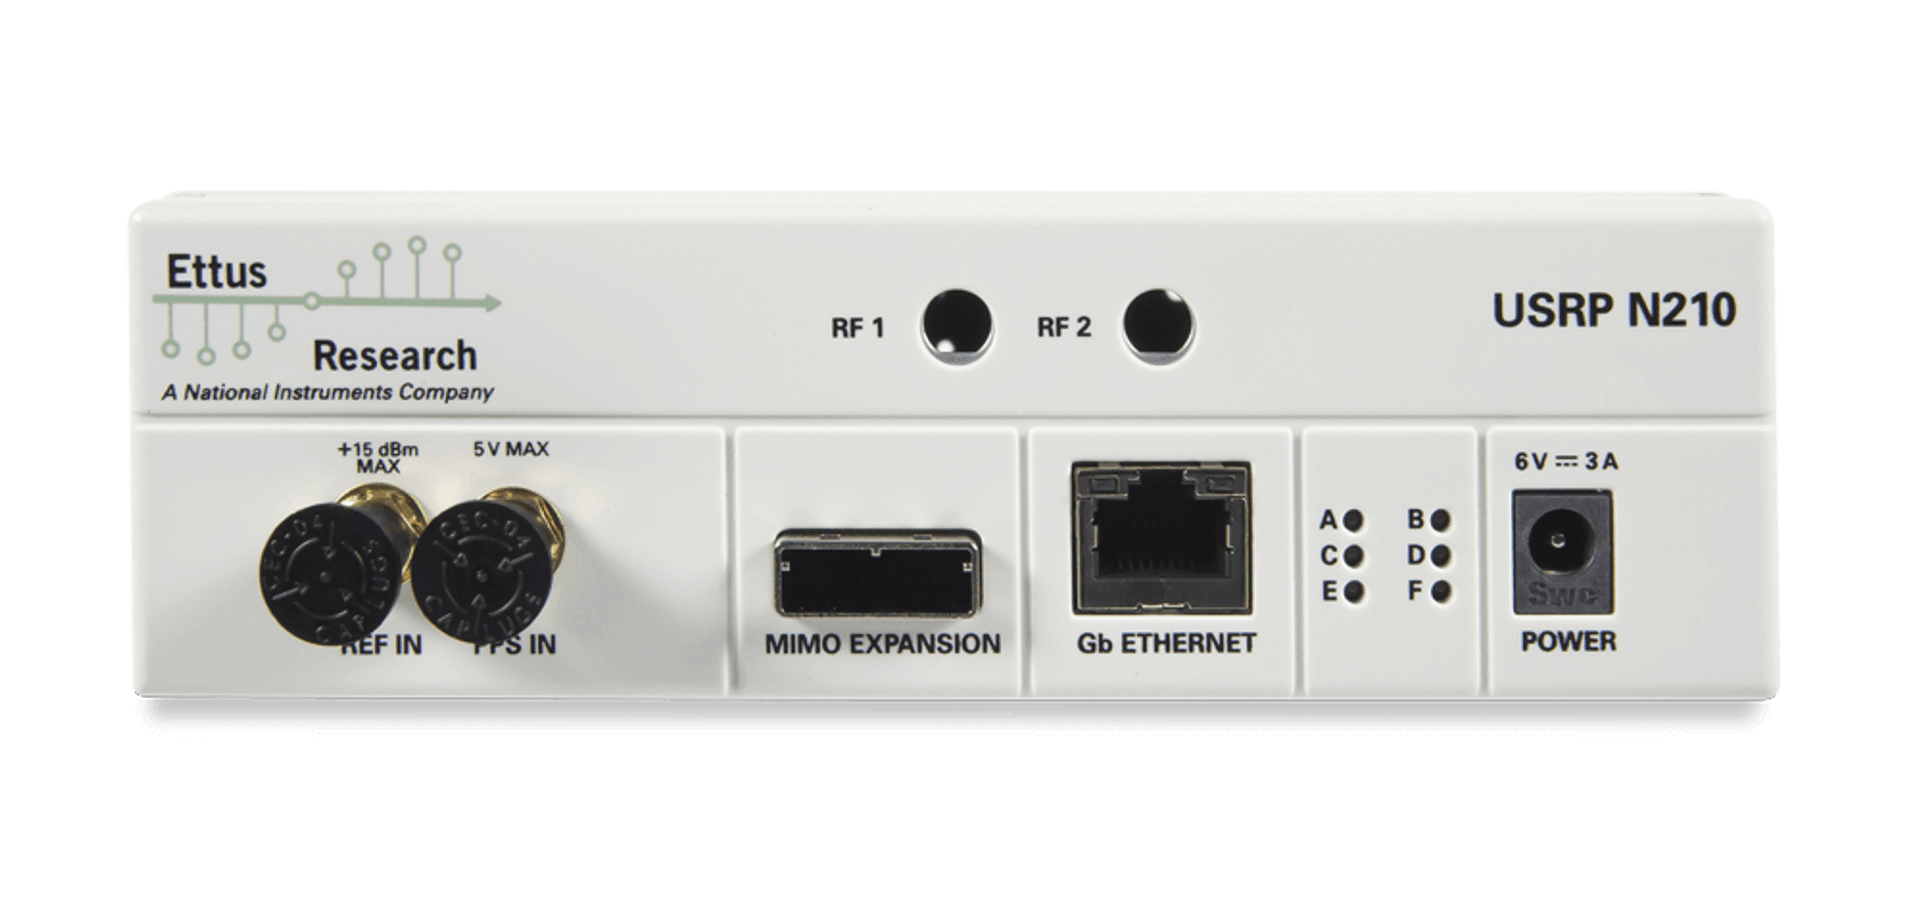 USRP N210 обладает высокой скоростью передачи данных и широким динамическим диапазоном обработки.